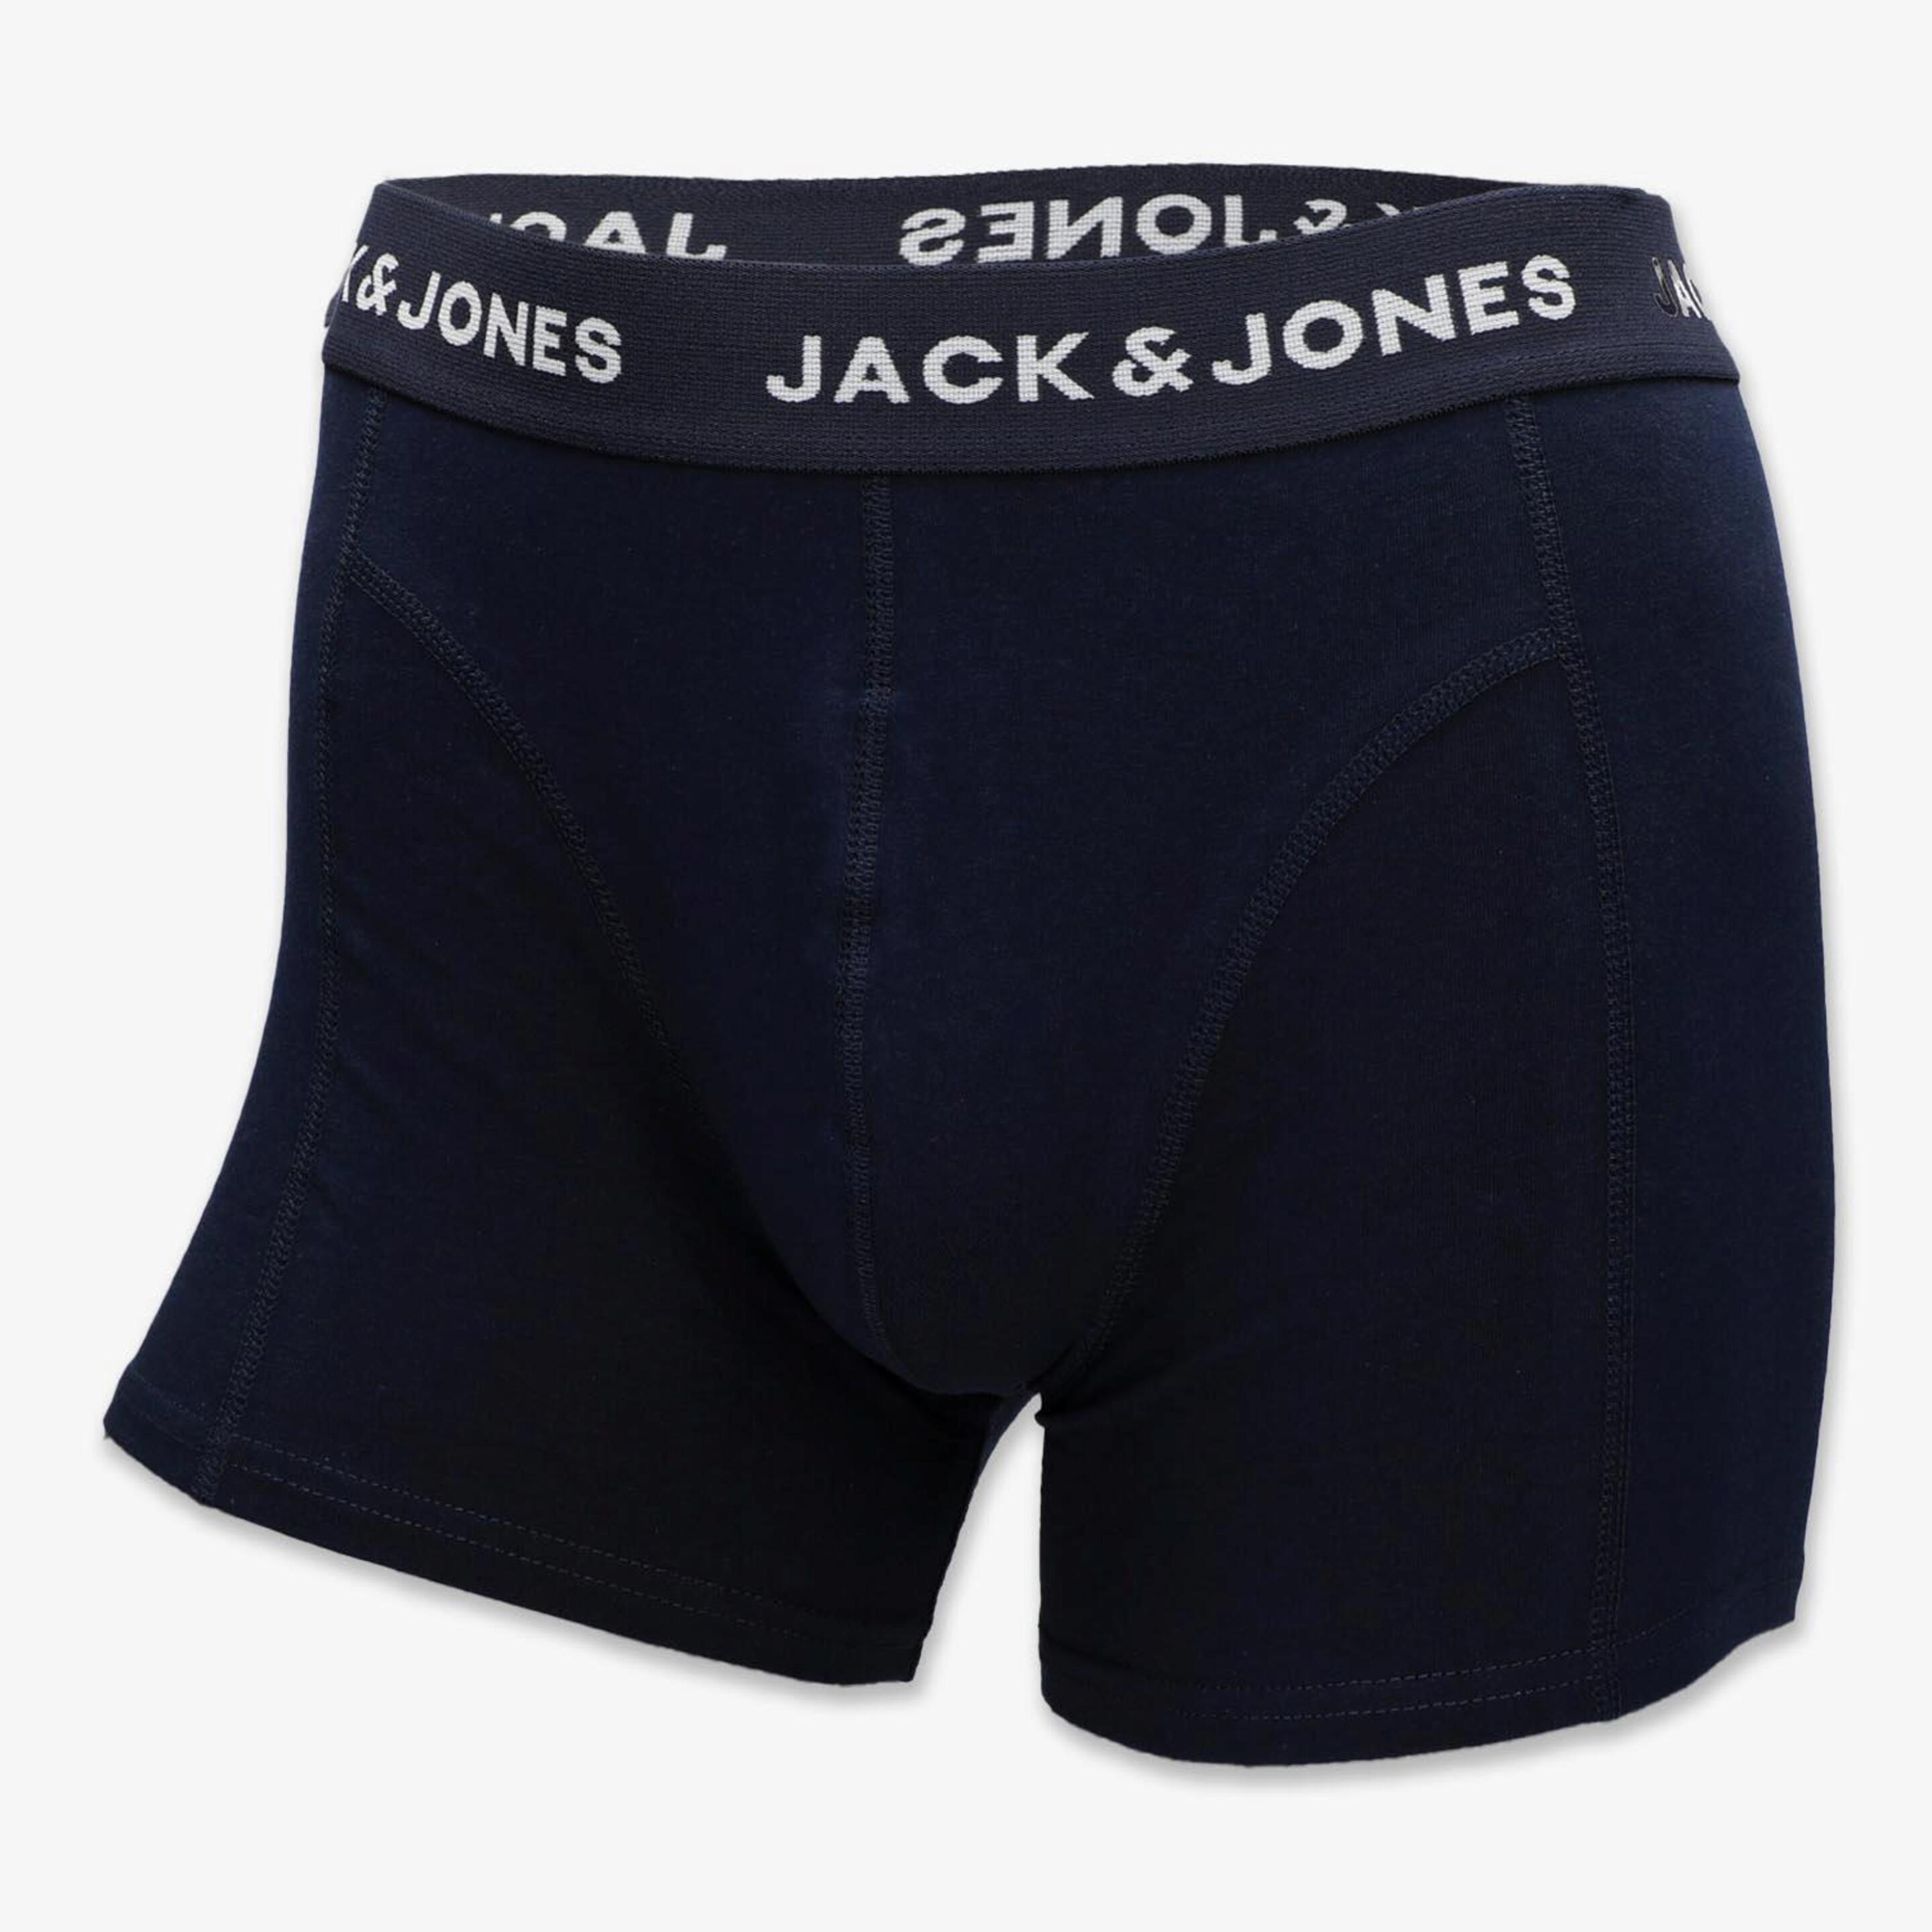 Jack & Jones Jaclouis